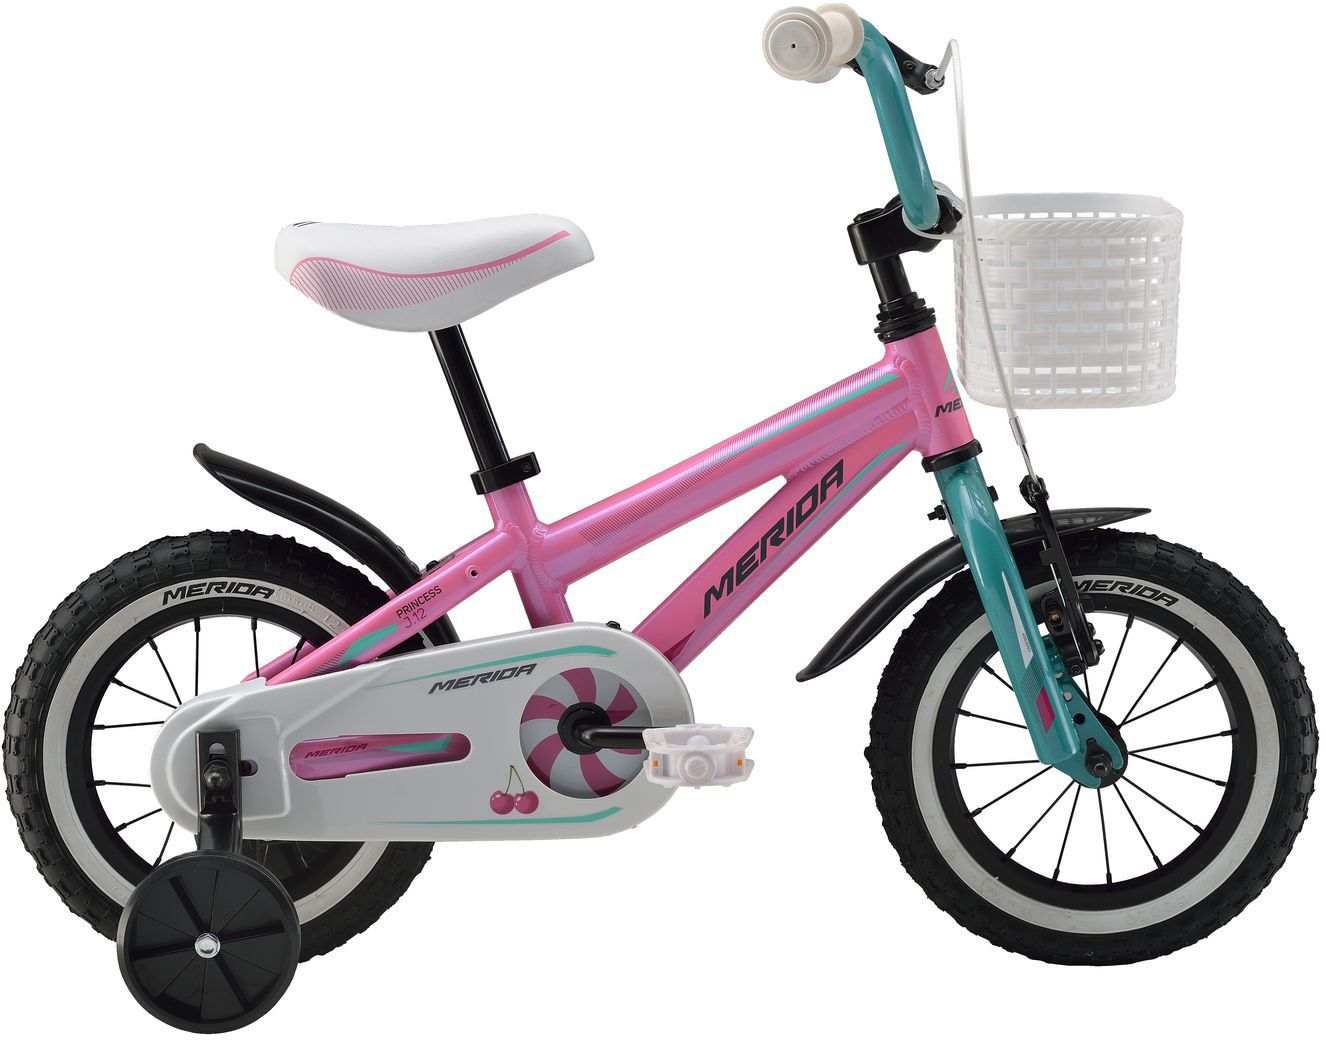  Отзывы о Детском велосипеде Merida Princess J12 2016